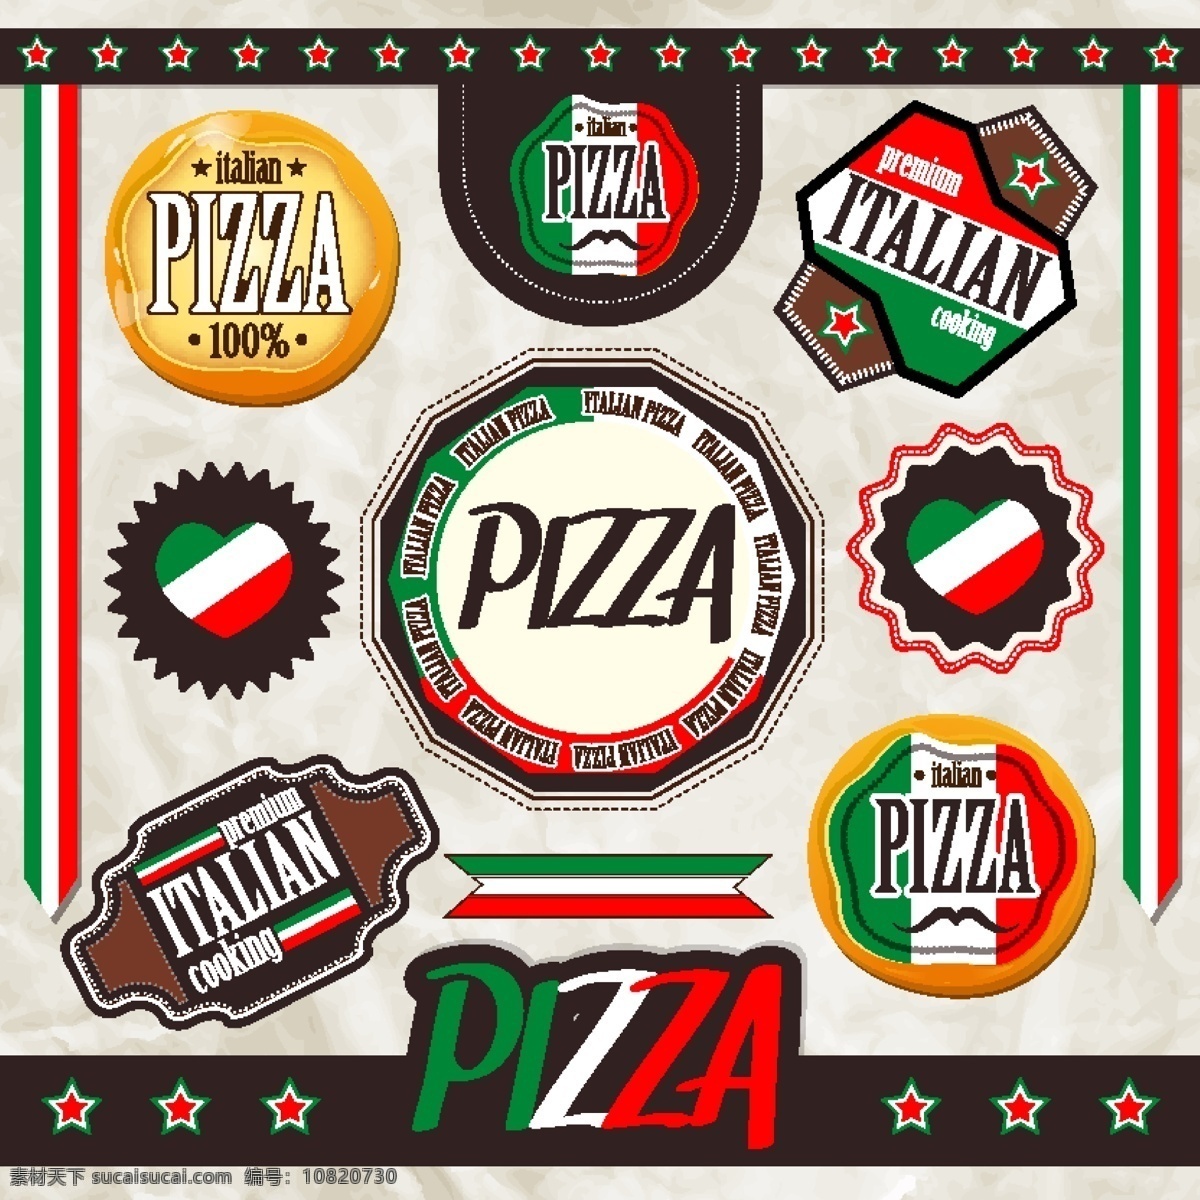 卡通 披萨 标签 矢量 模板下载 pizza collection20 餐饮美食 生活百科 矢量素材 白色